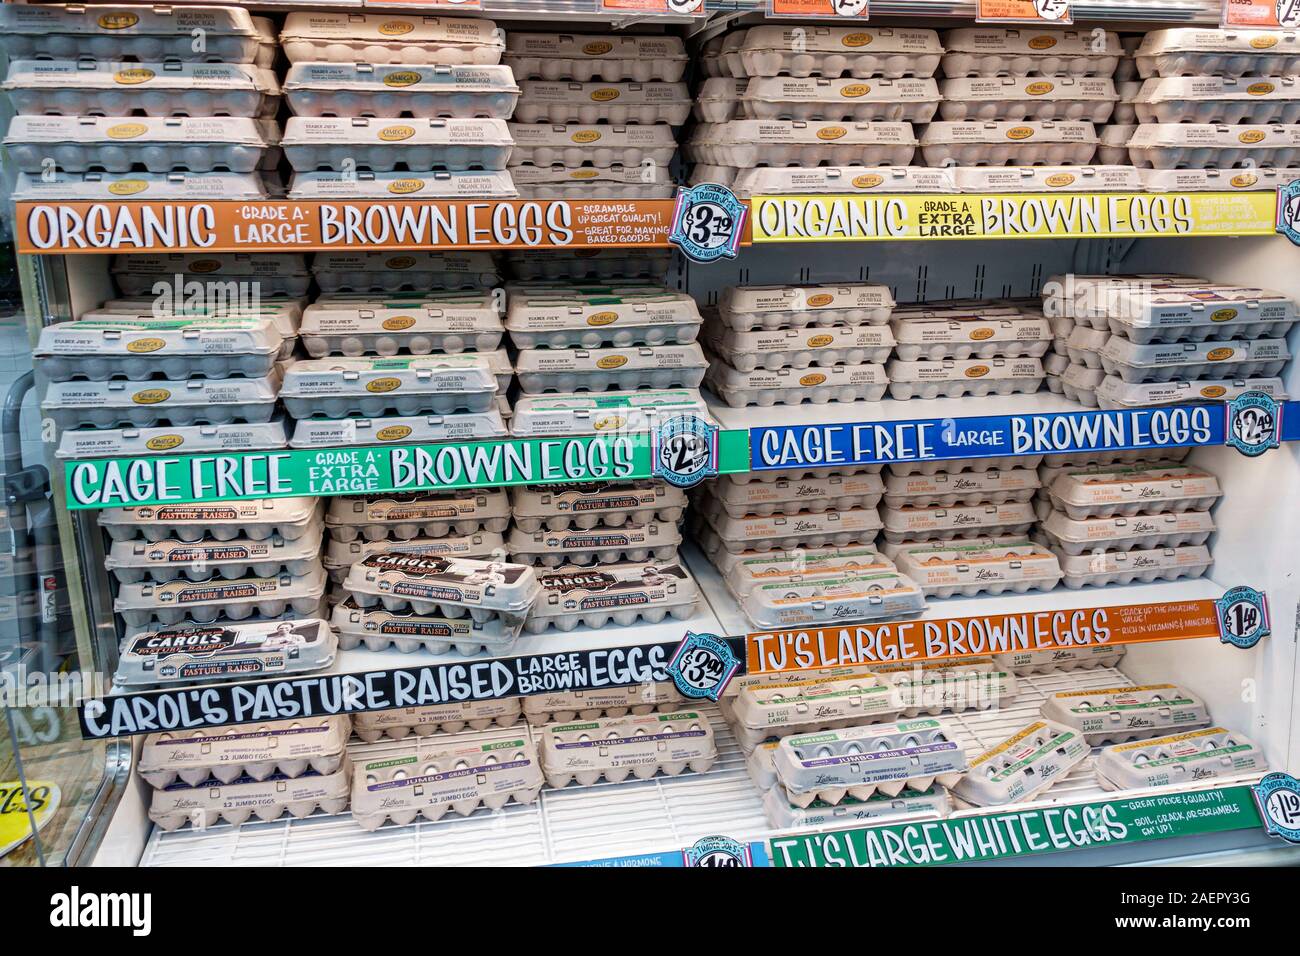 Miami Beach Florida, Trader Joe's, supermercado, tiendas, interior, huevos, cajas de huevo, orgánico, jaula libre, marrón, pastos criados, displ Foto de stock